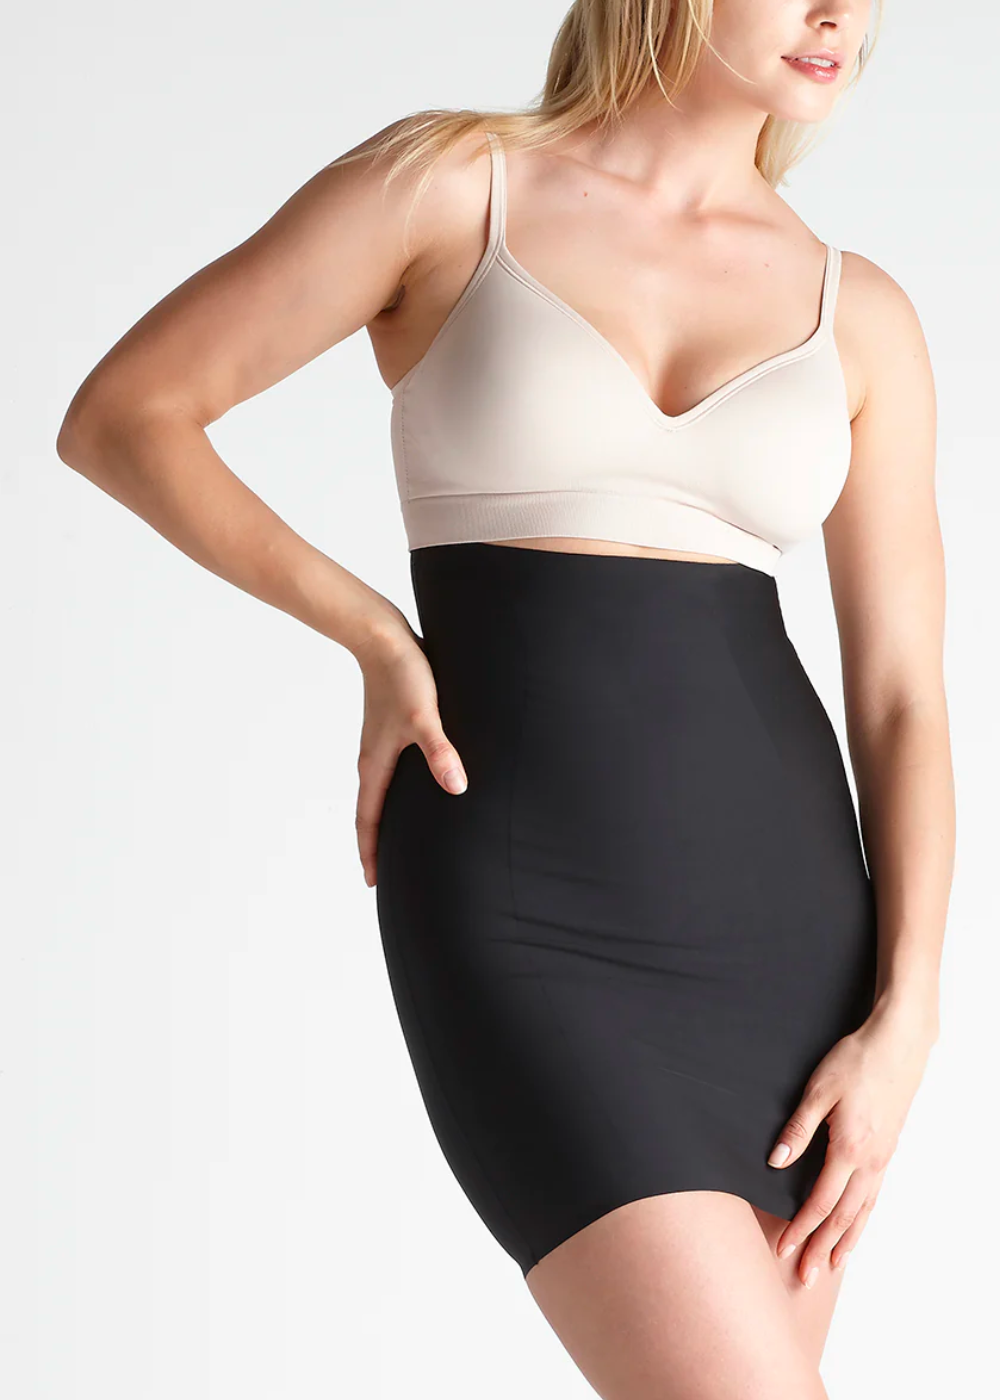 Hidden Curves Firm Shaping High Waist Skirt Slip